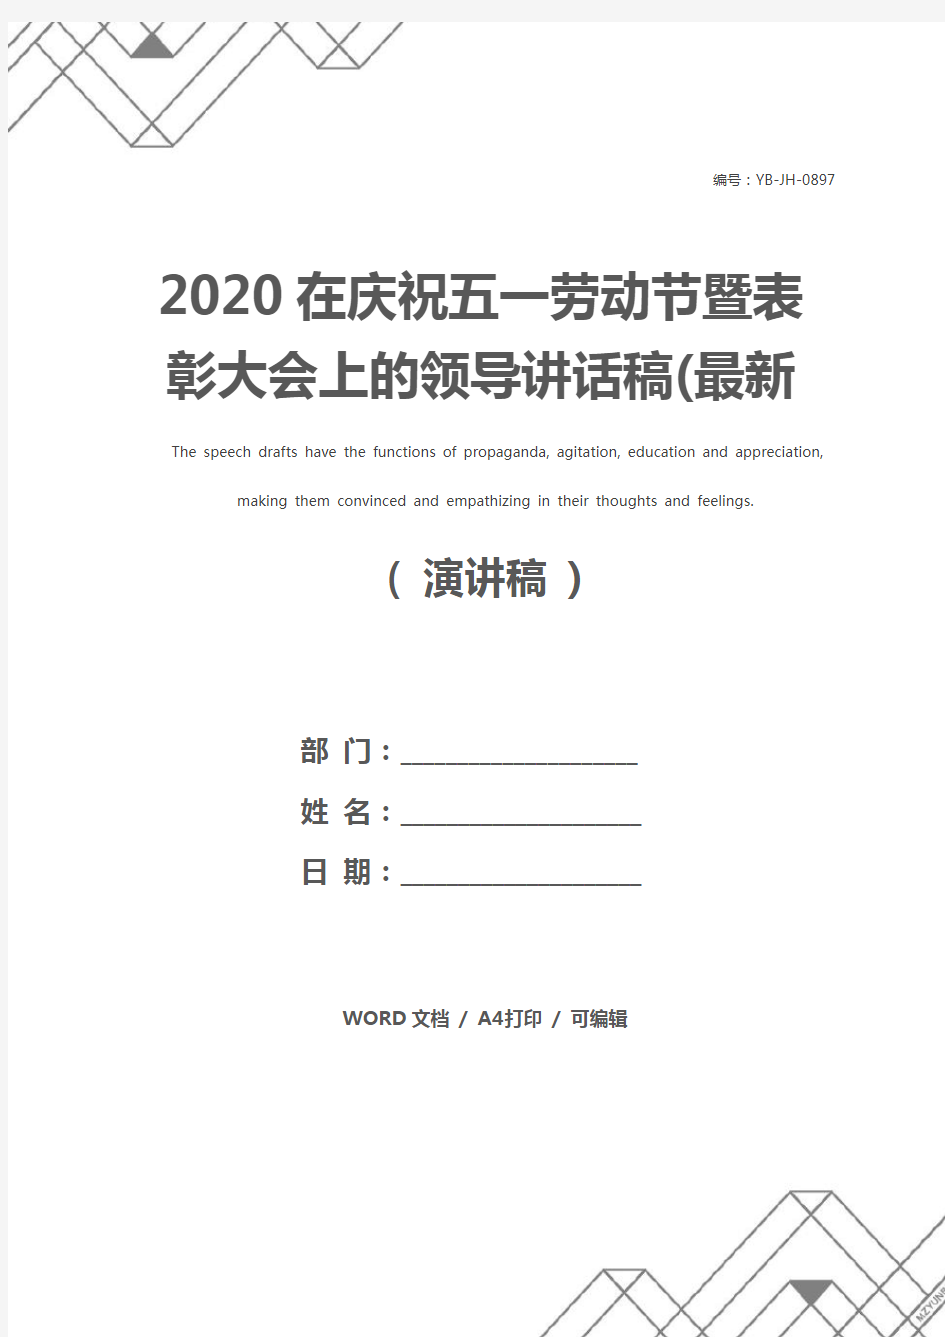 2020在庆祝五一劳动节暨表彰大会上的领导讲话稿(最新版)